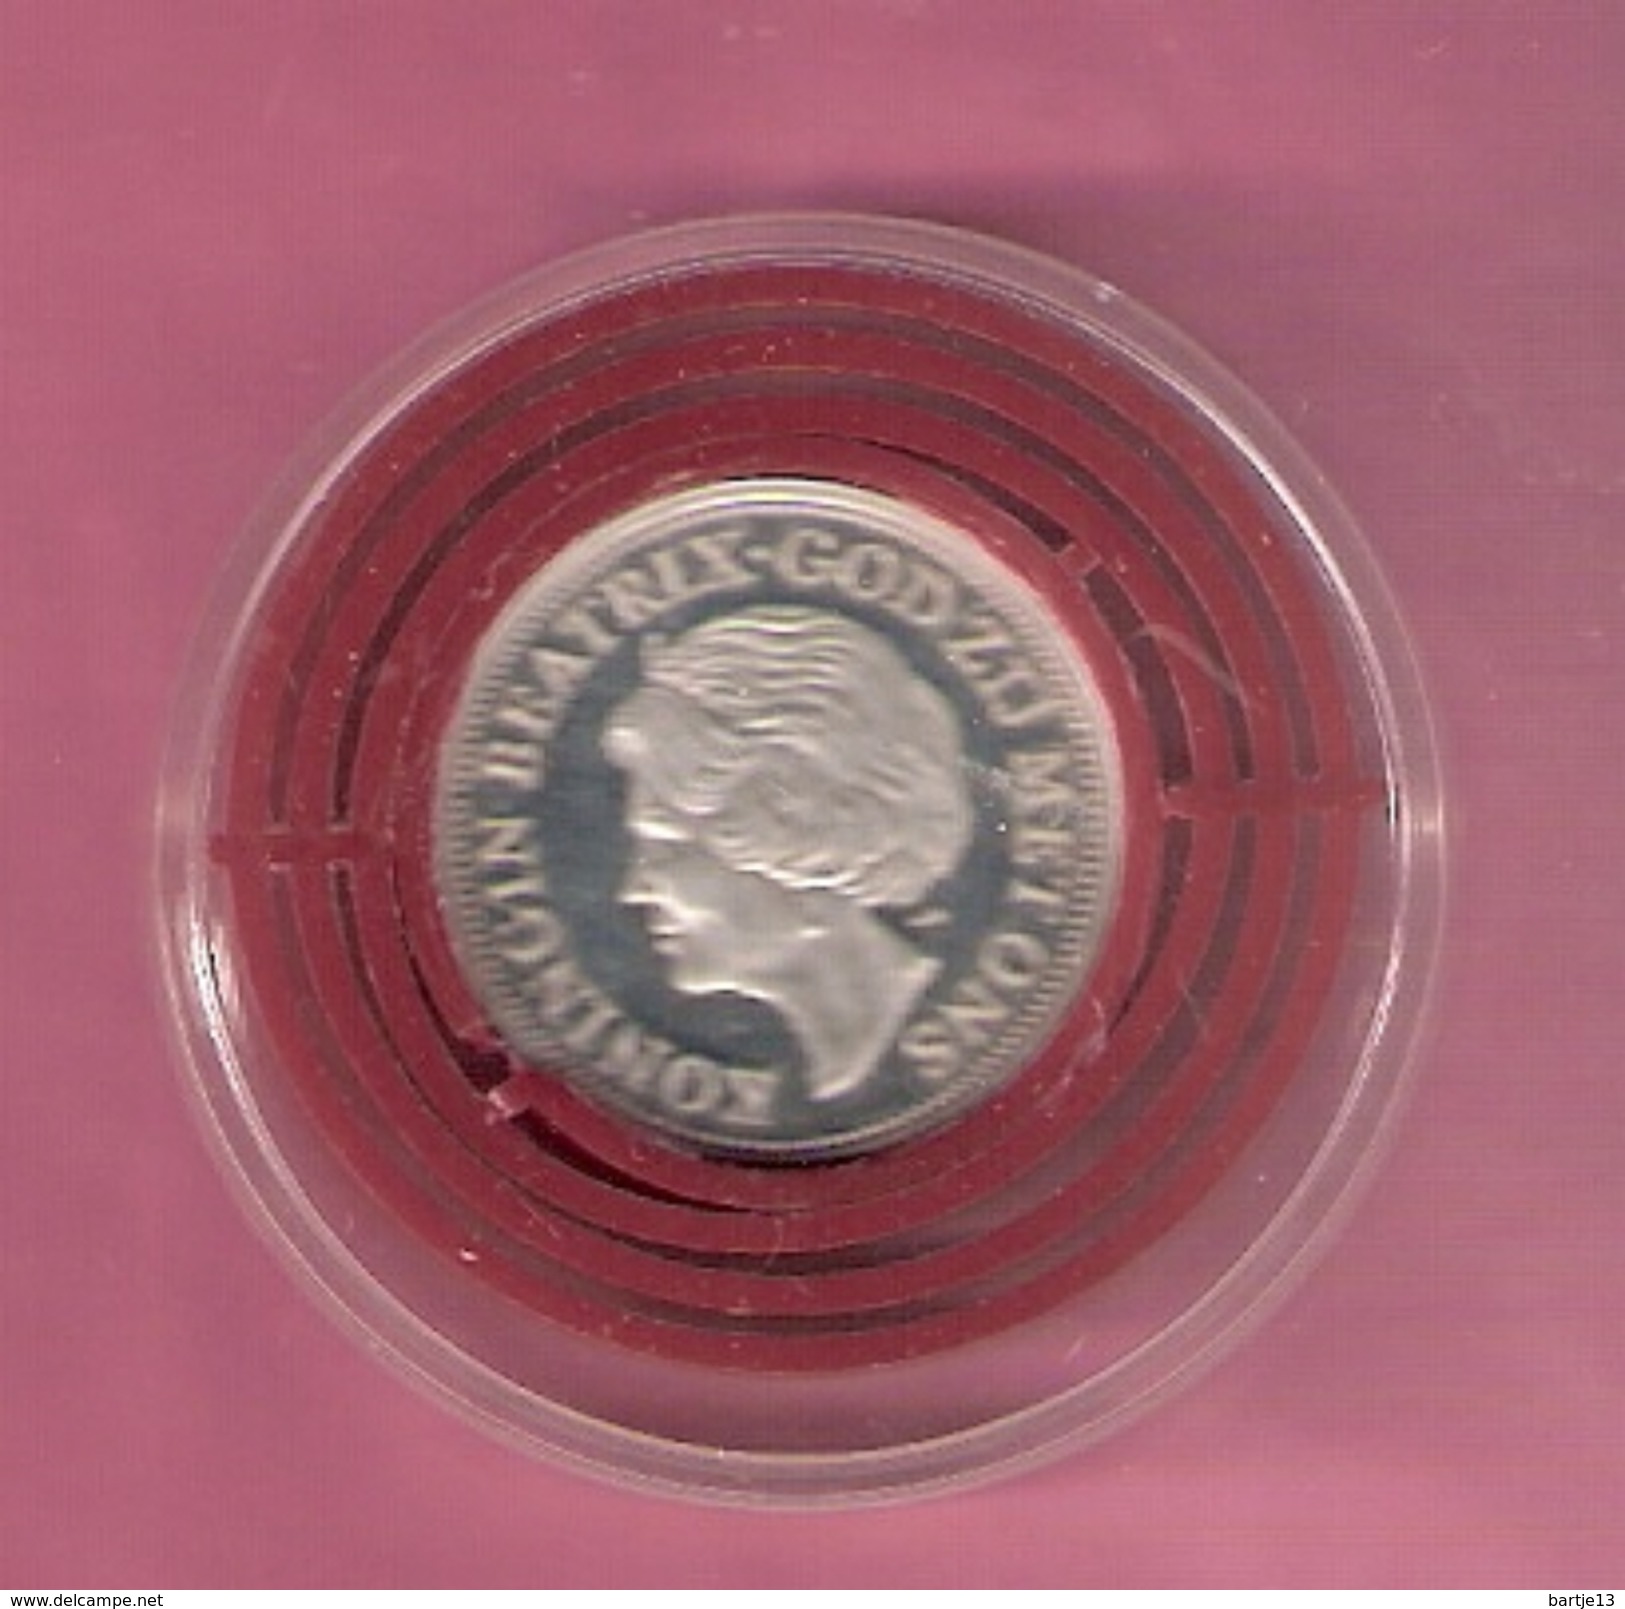 NEDERLAND SILVER MEDAL 1990 BEATRIX 10 YEAR QUEEN - Pièces écrasées (Elongated Coins)